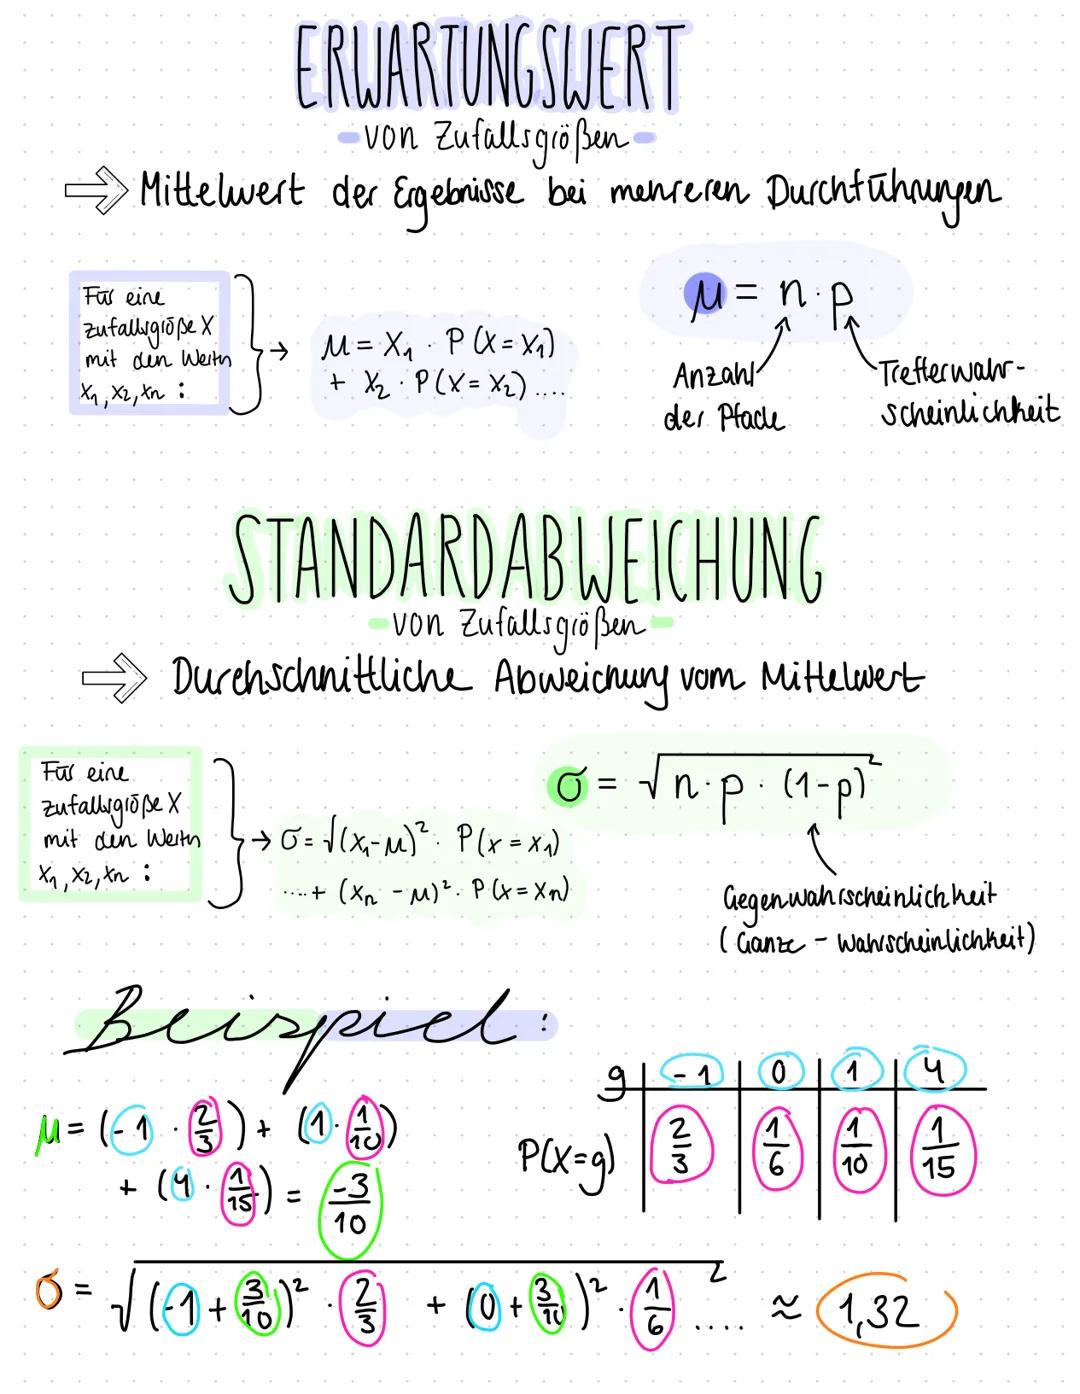 4. MATHEMATIK KLAUSUR
Stochastik
THEMEN
Binomial verteilung (Erwartungswert + Standard abweichung)
Erwartungswert
Standardabweichung von Zuf